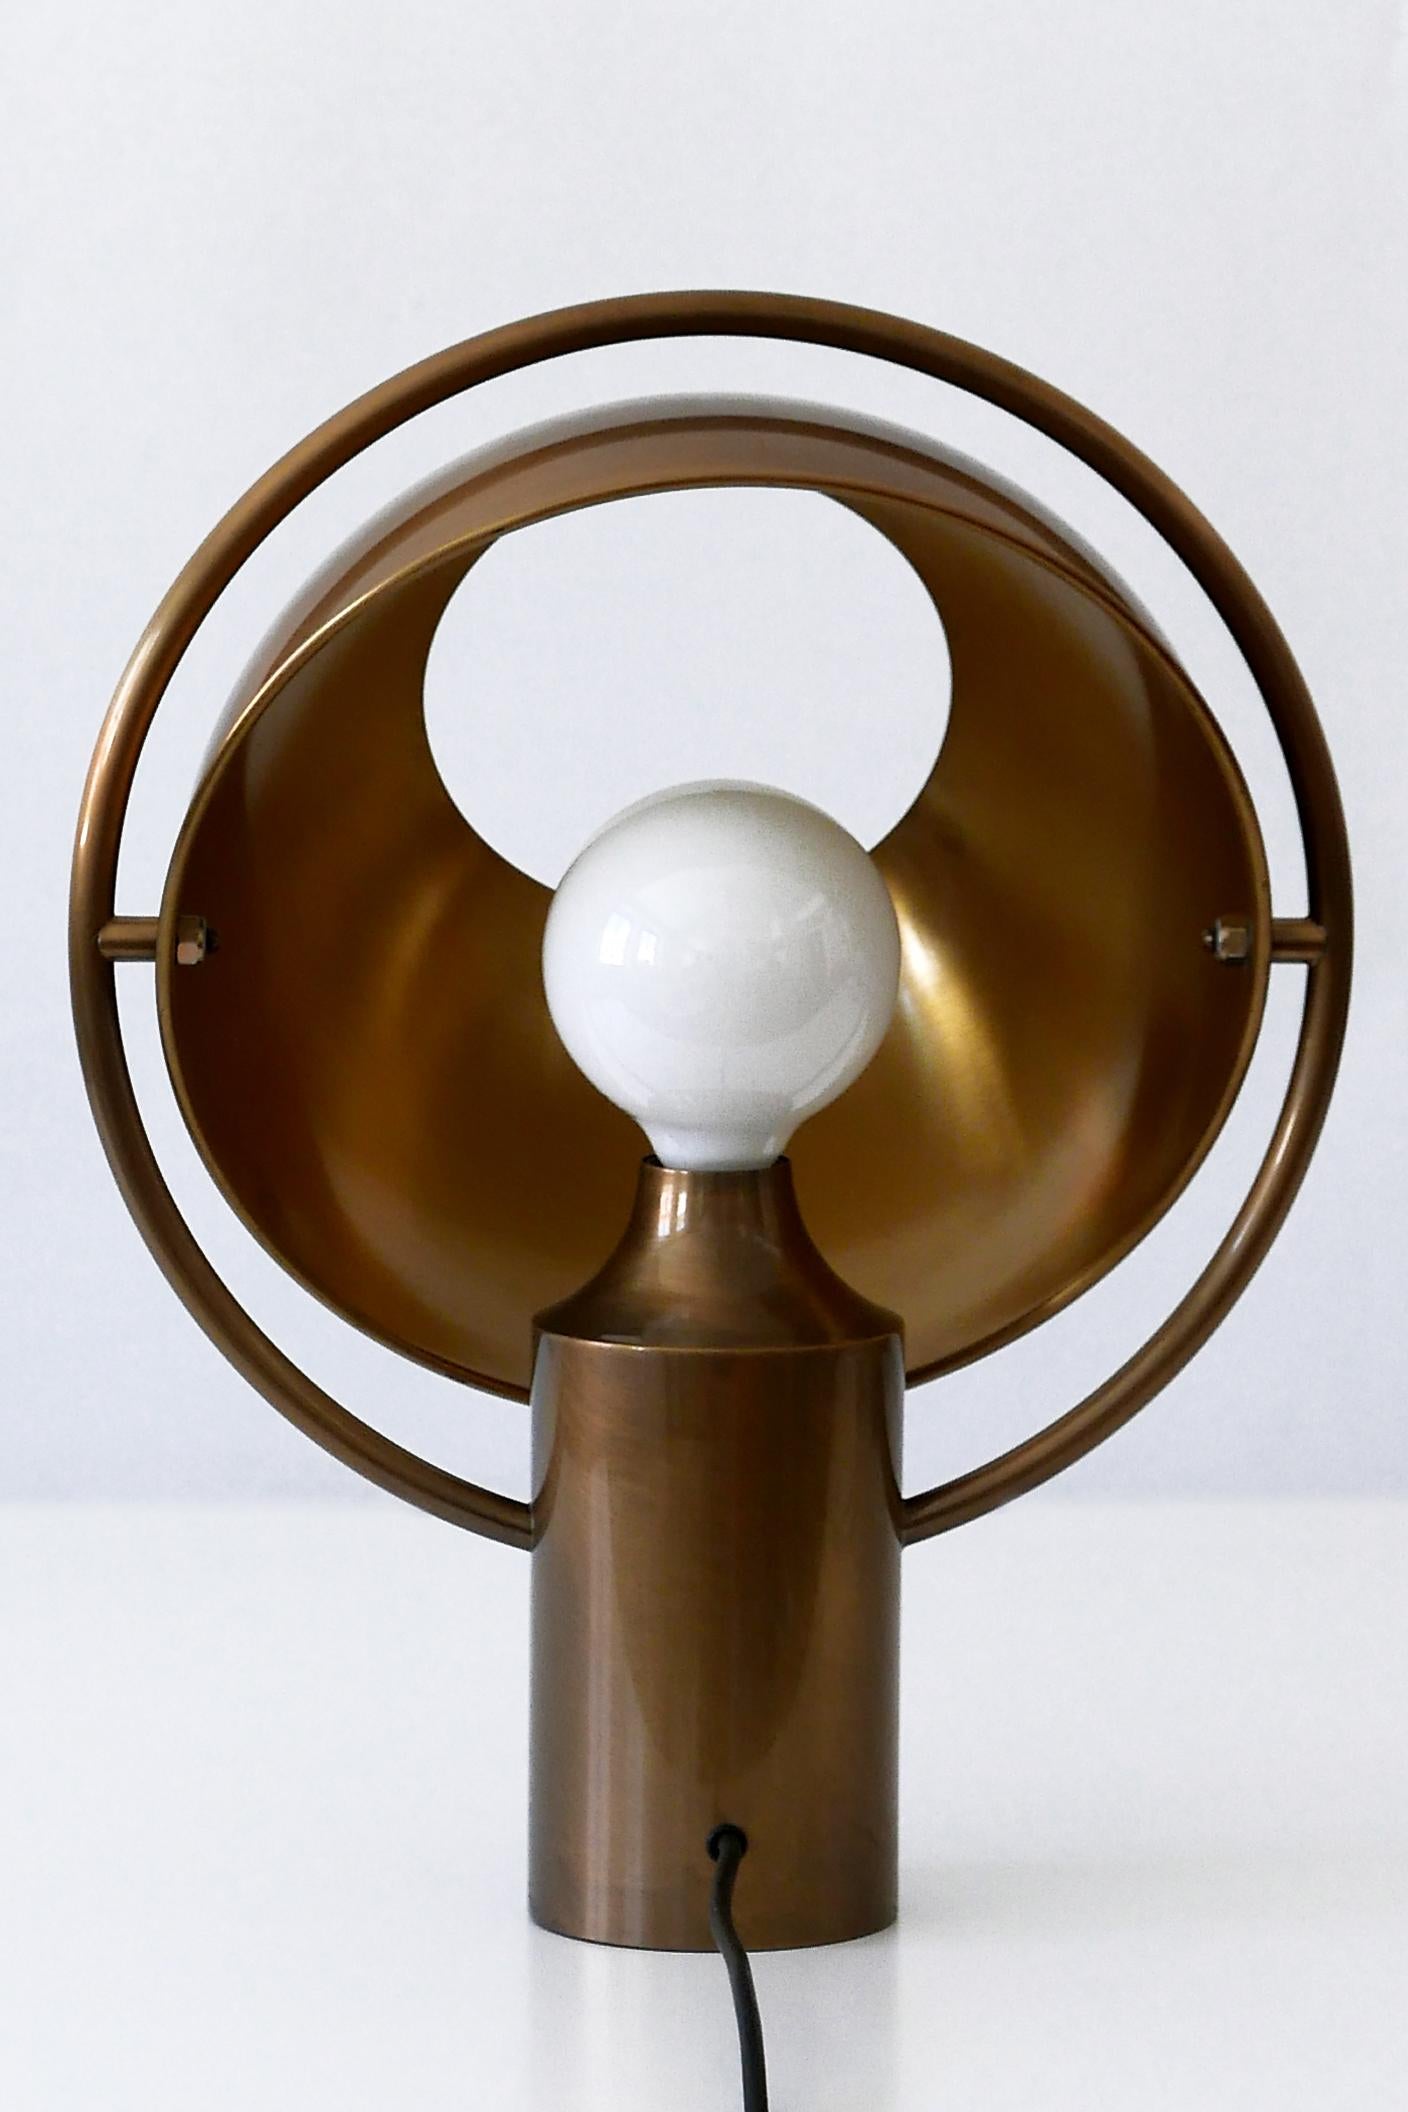 lamp with rotating shade